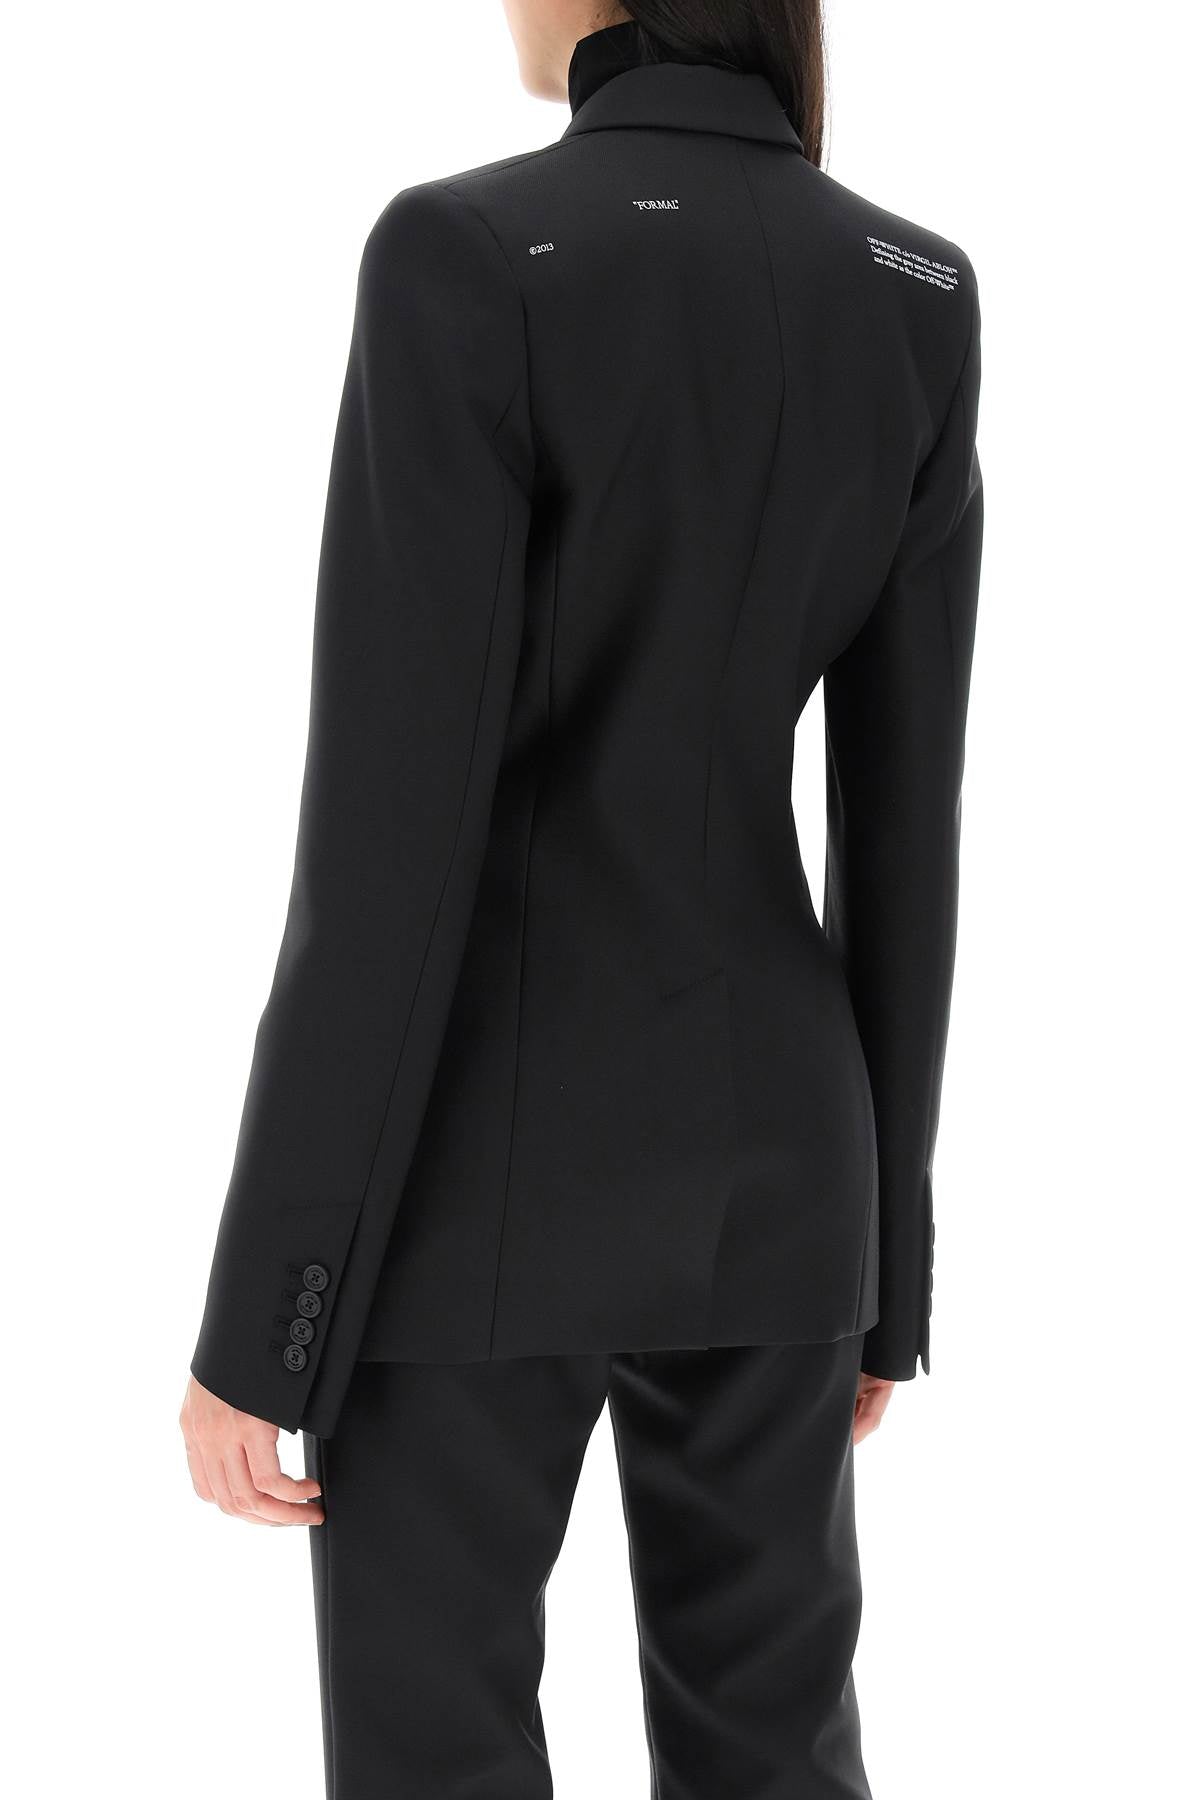 Áo jacket nữ OFF-WHITE màu đen dáng dài với cổ bẻ và thiết kế đơn giản